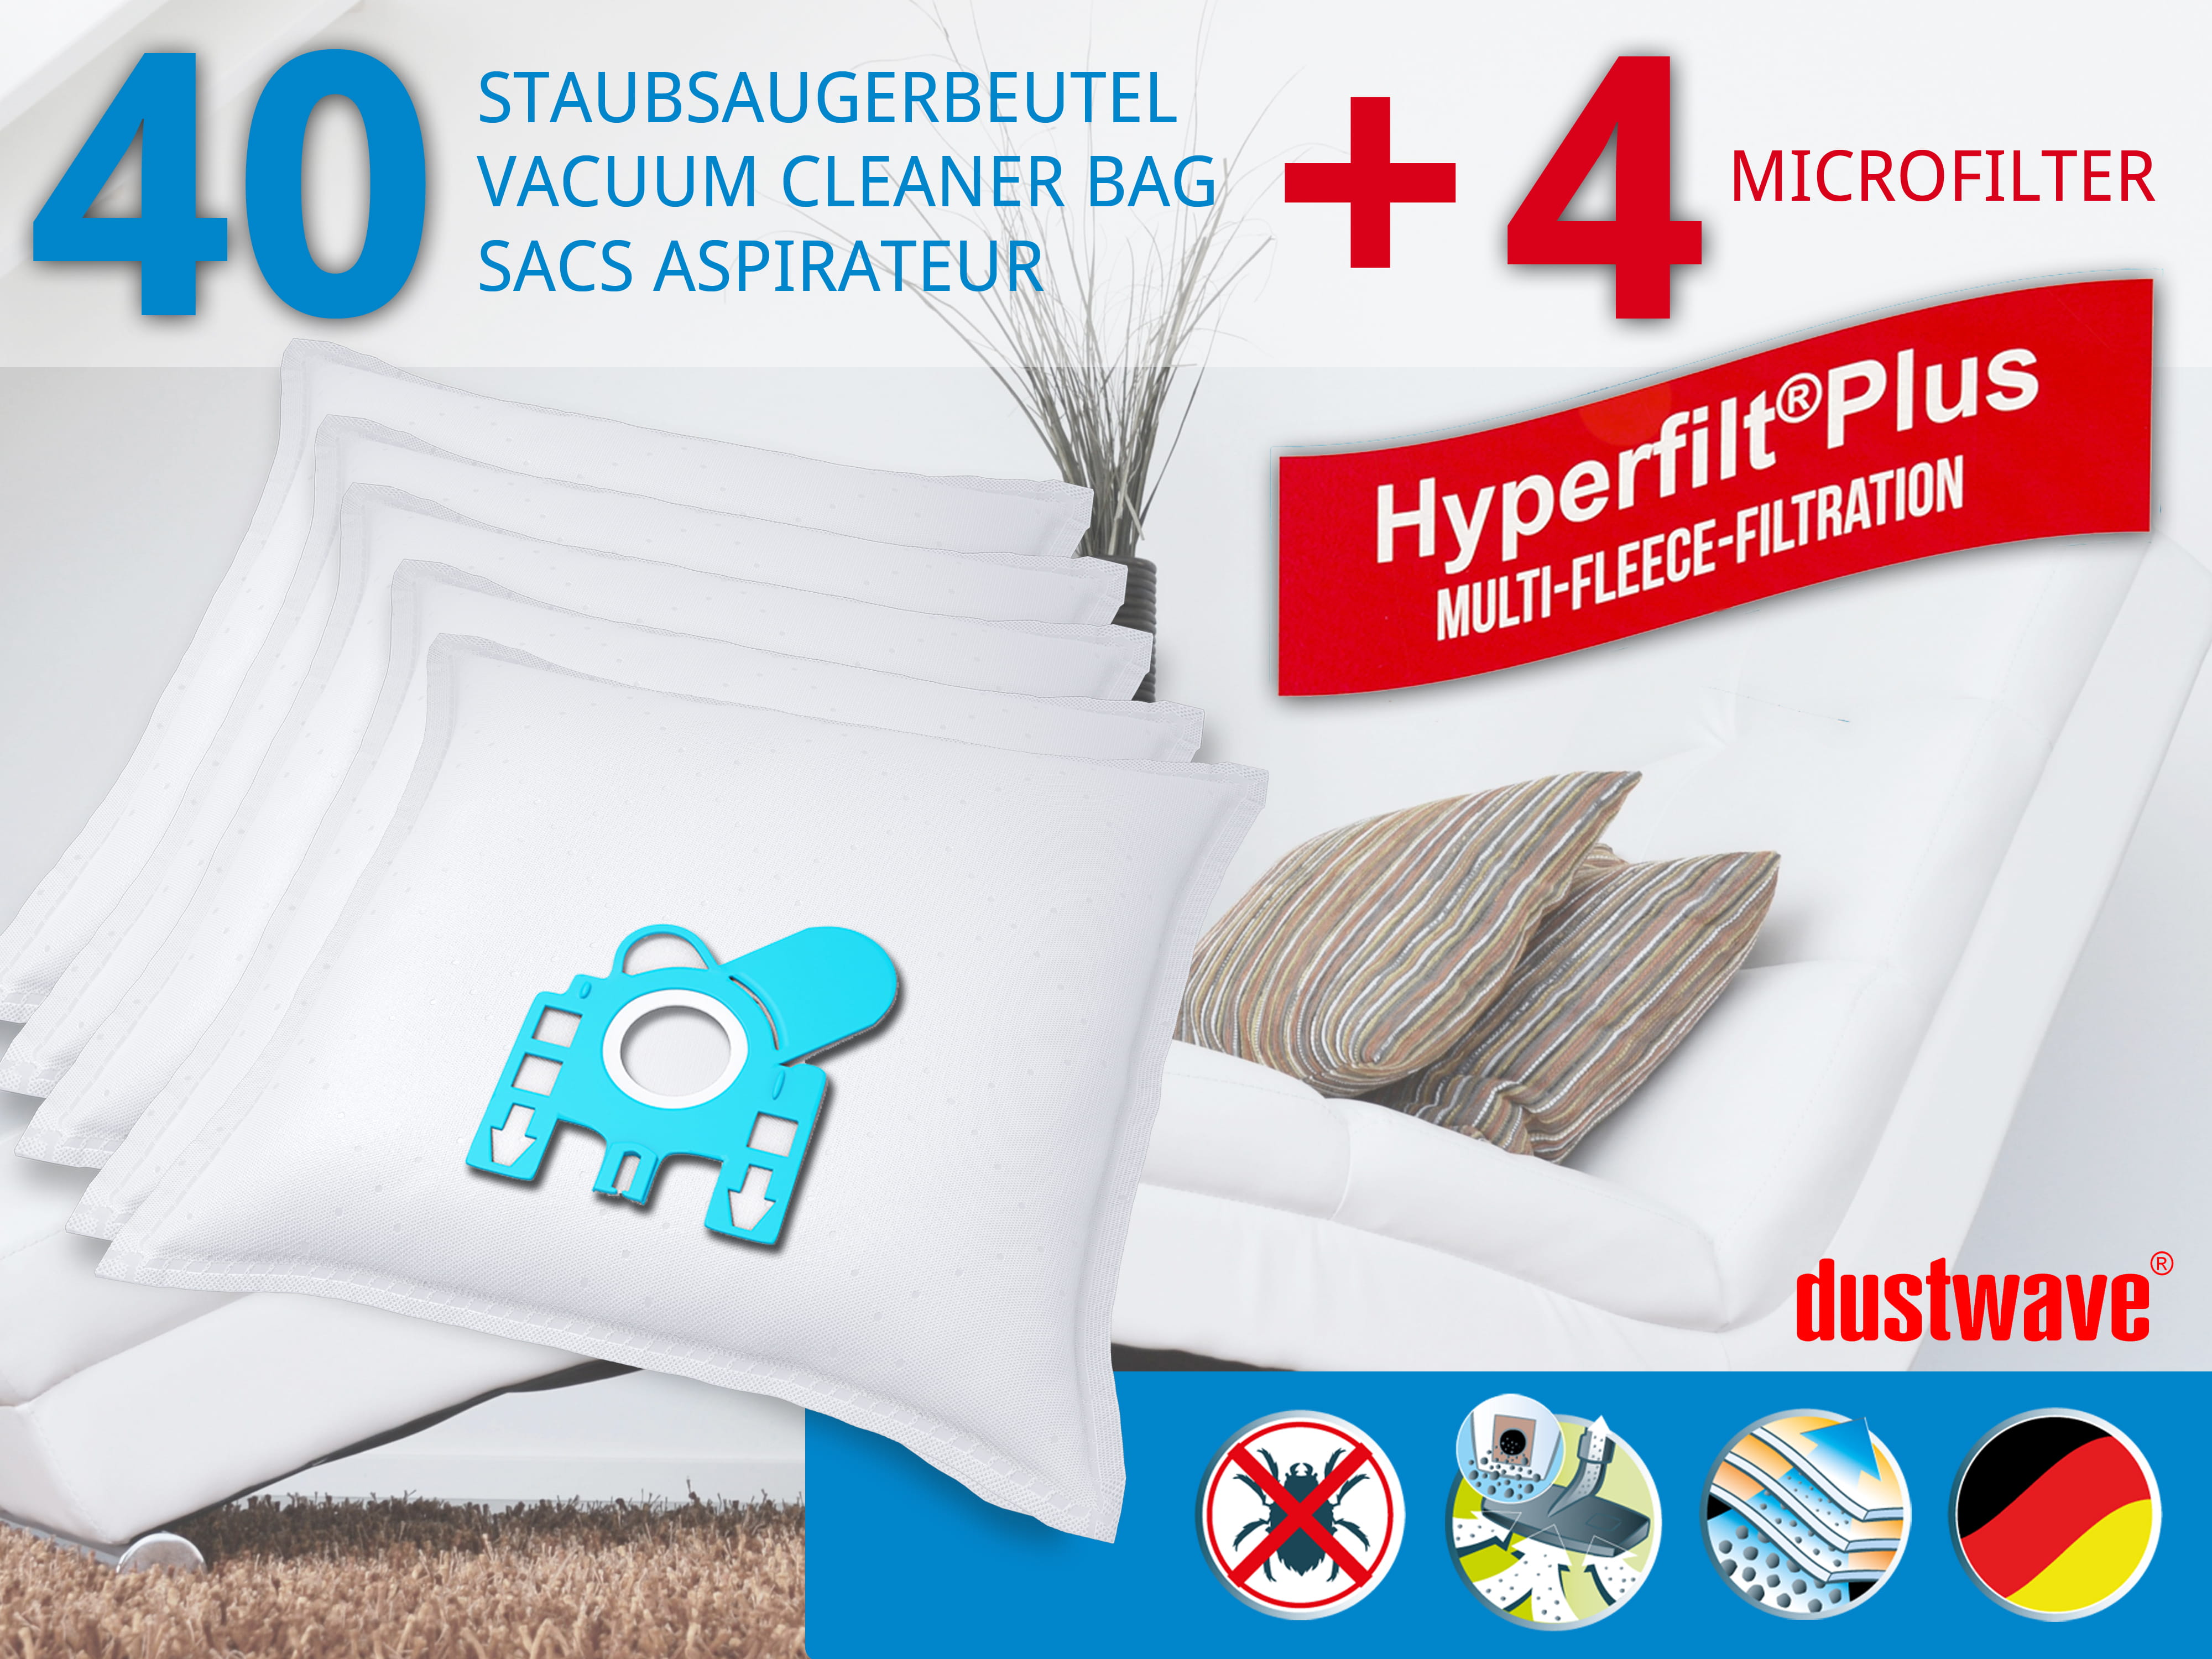 Dustwave® 40 Staubsaugerbeutel für Hoover 39000246 - hocheffizient, mehrlagiges Mikrovlies mit Hygieneverschluss - Made in Germany